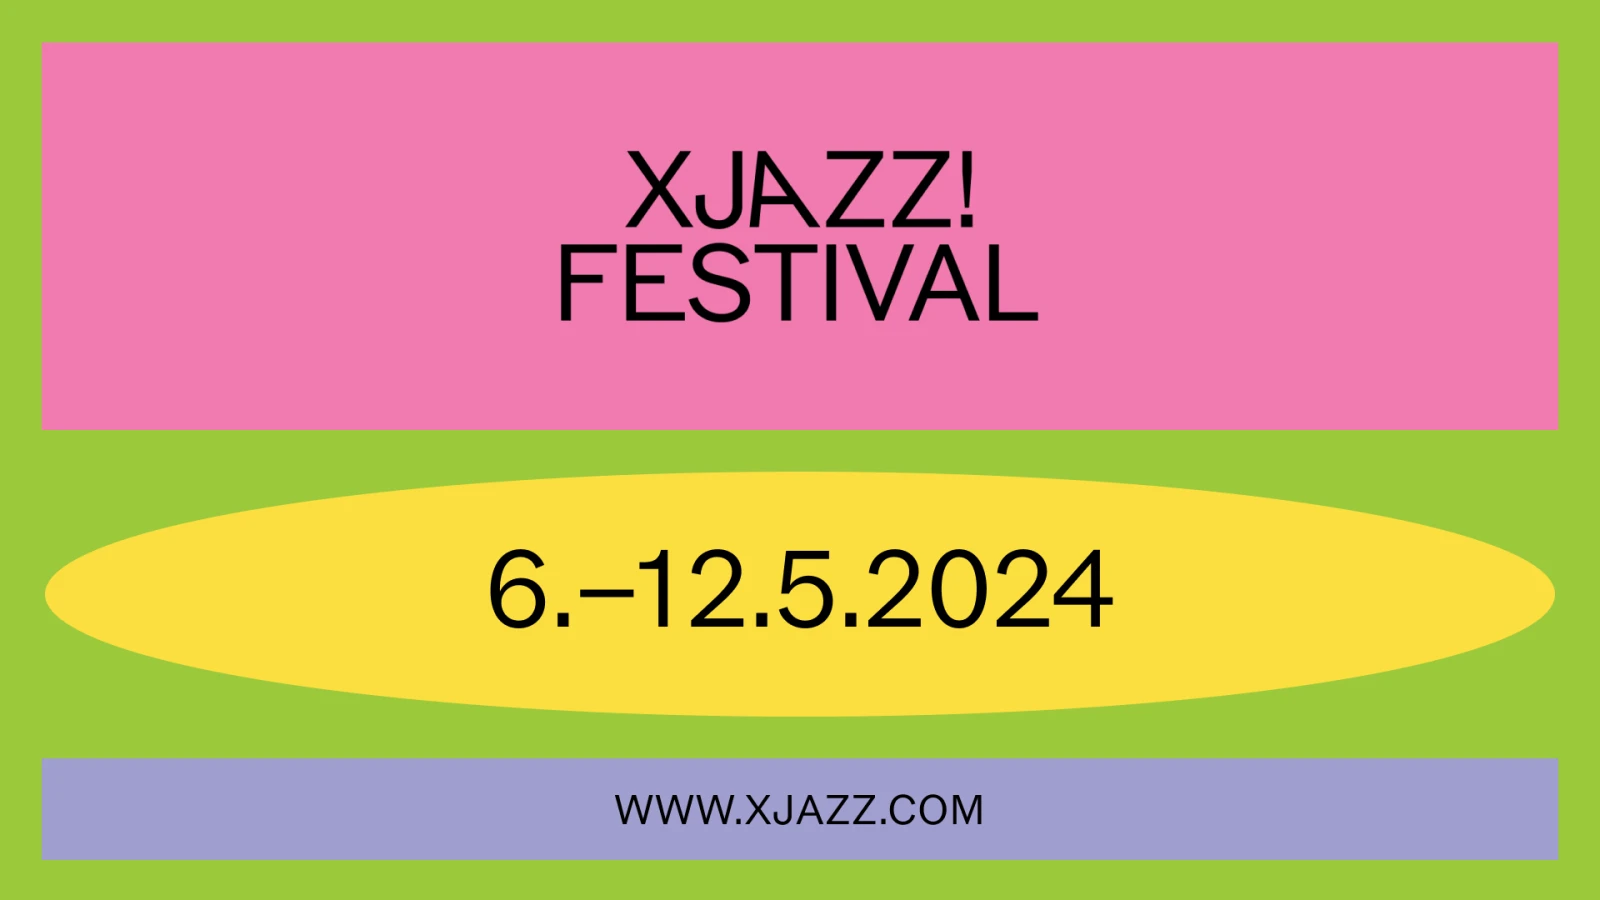 XJAZZ Berlin 2023 - Festival Programm